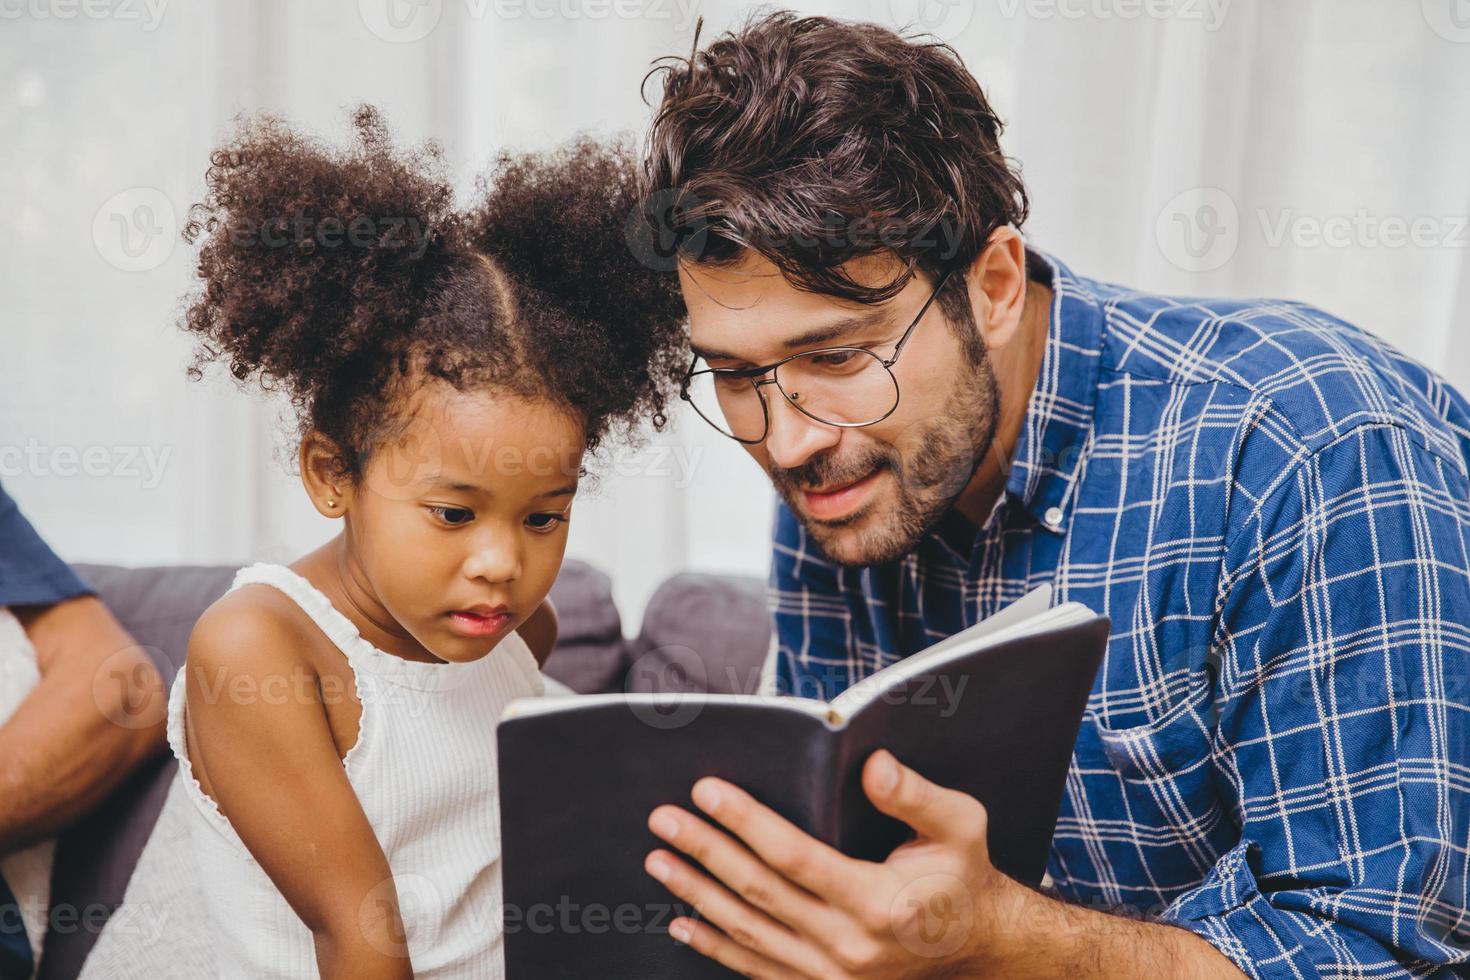 petit enfant mignon intéressant le livre aime lire et apprendre le soutien de papa au concept d'enfant intelligent. photo